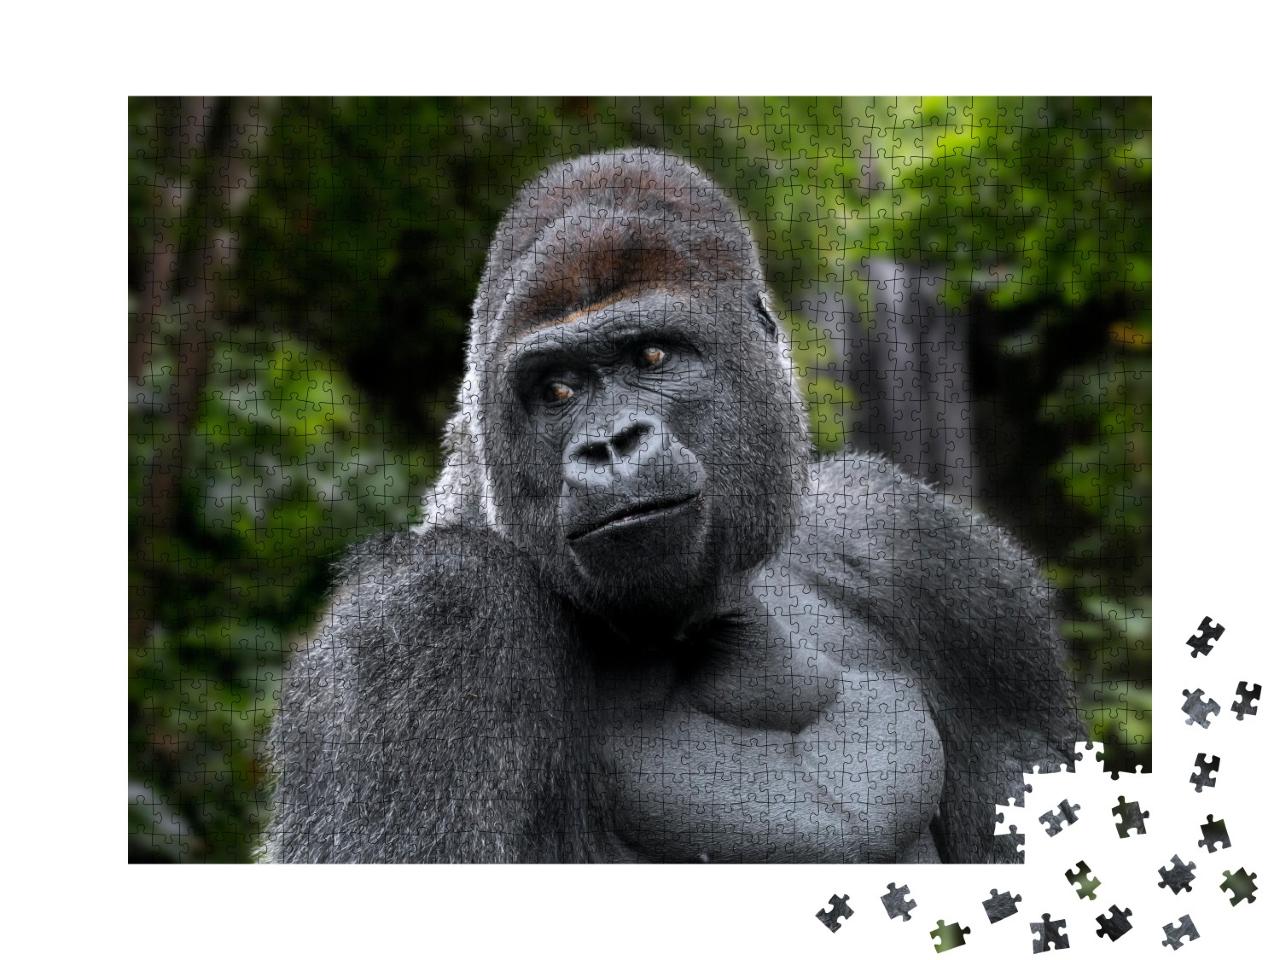 Puzzle de 1000 pièces « Gorille des plaines de l'Ouest mâle à dos argenté »